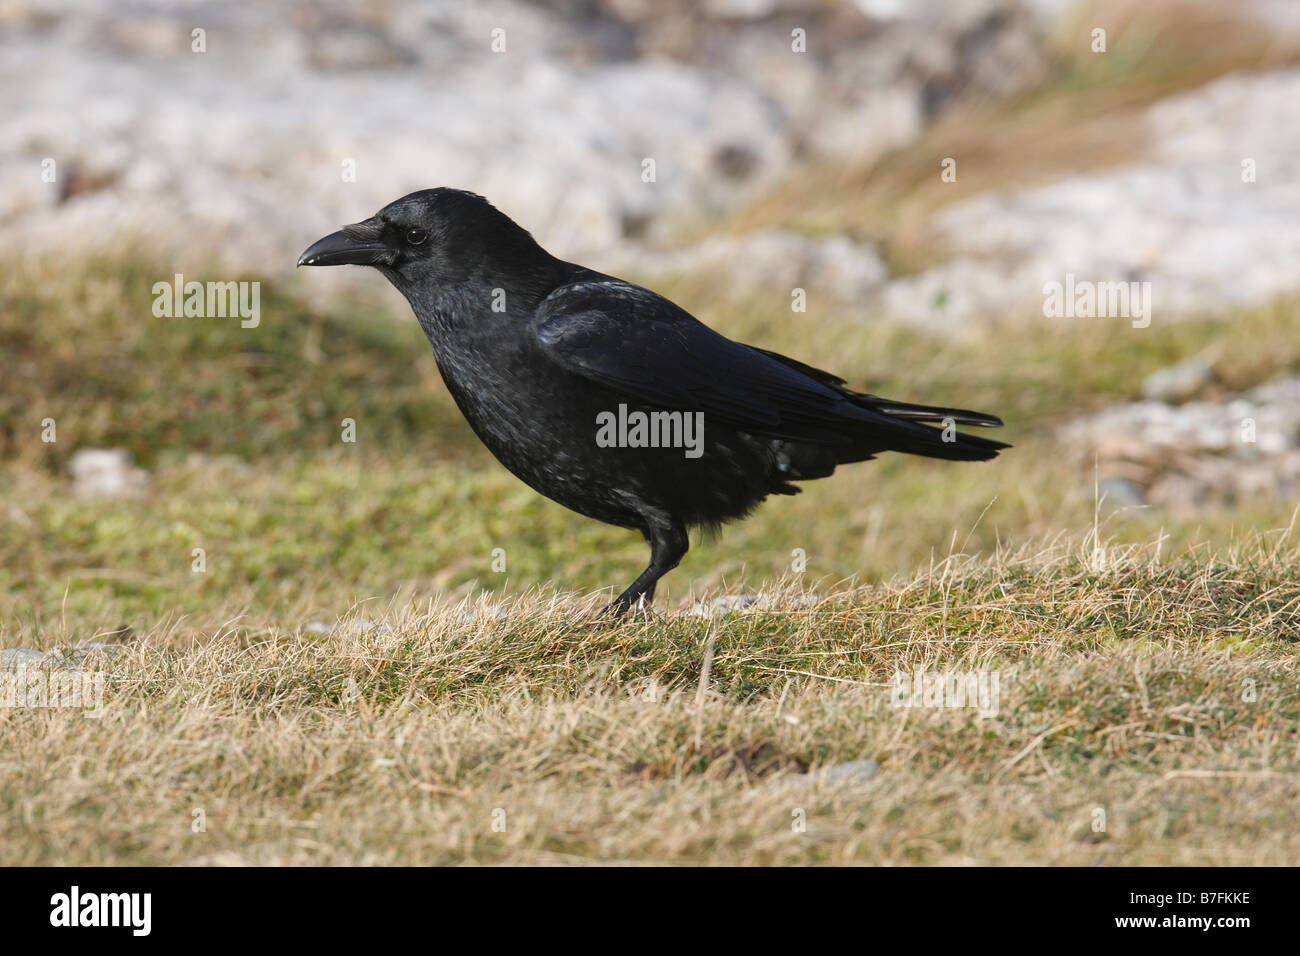 Corneille noire Corvus corone PERCHING ON ROCK Banque D'Images